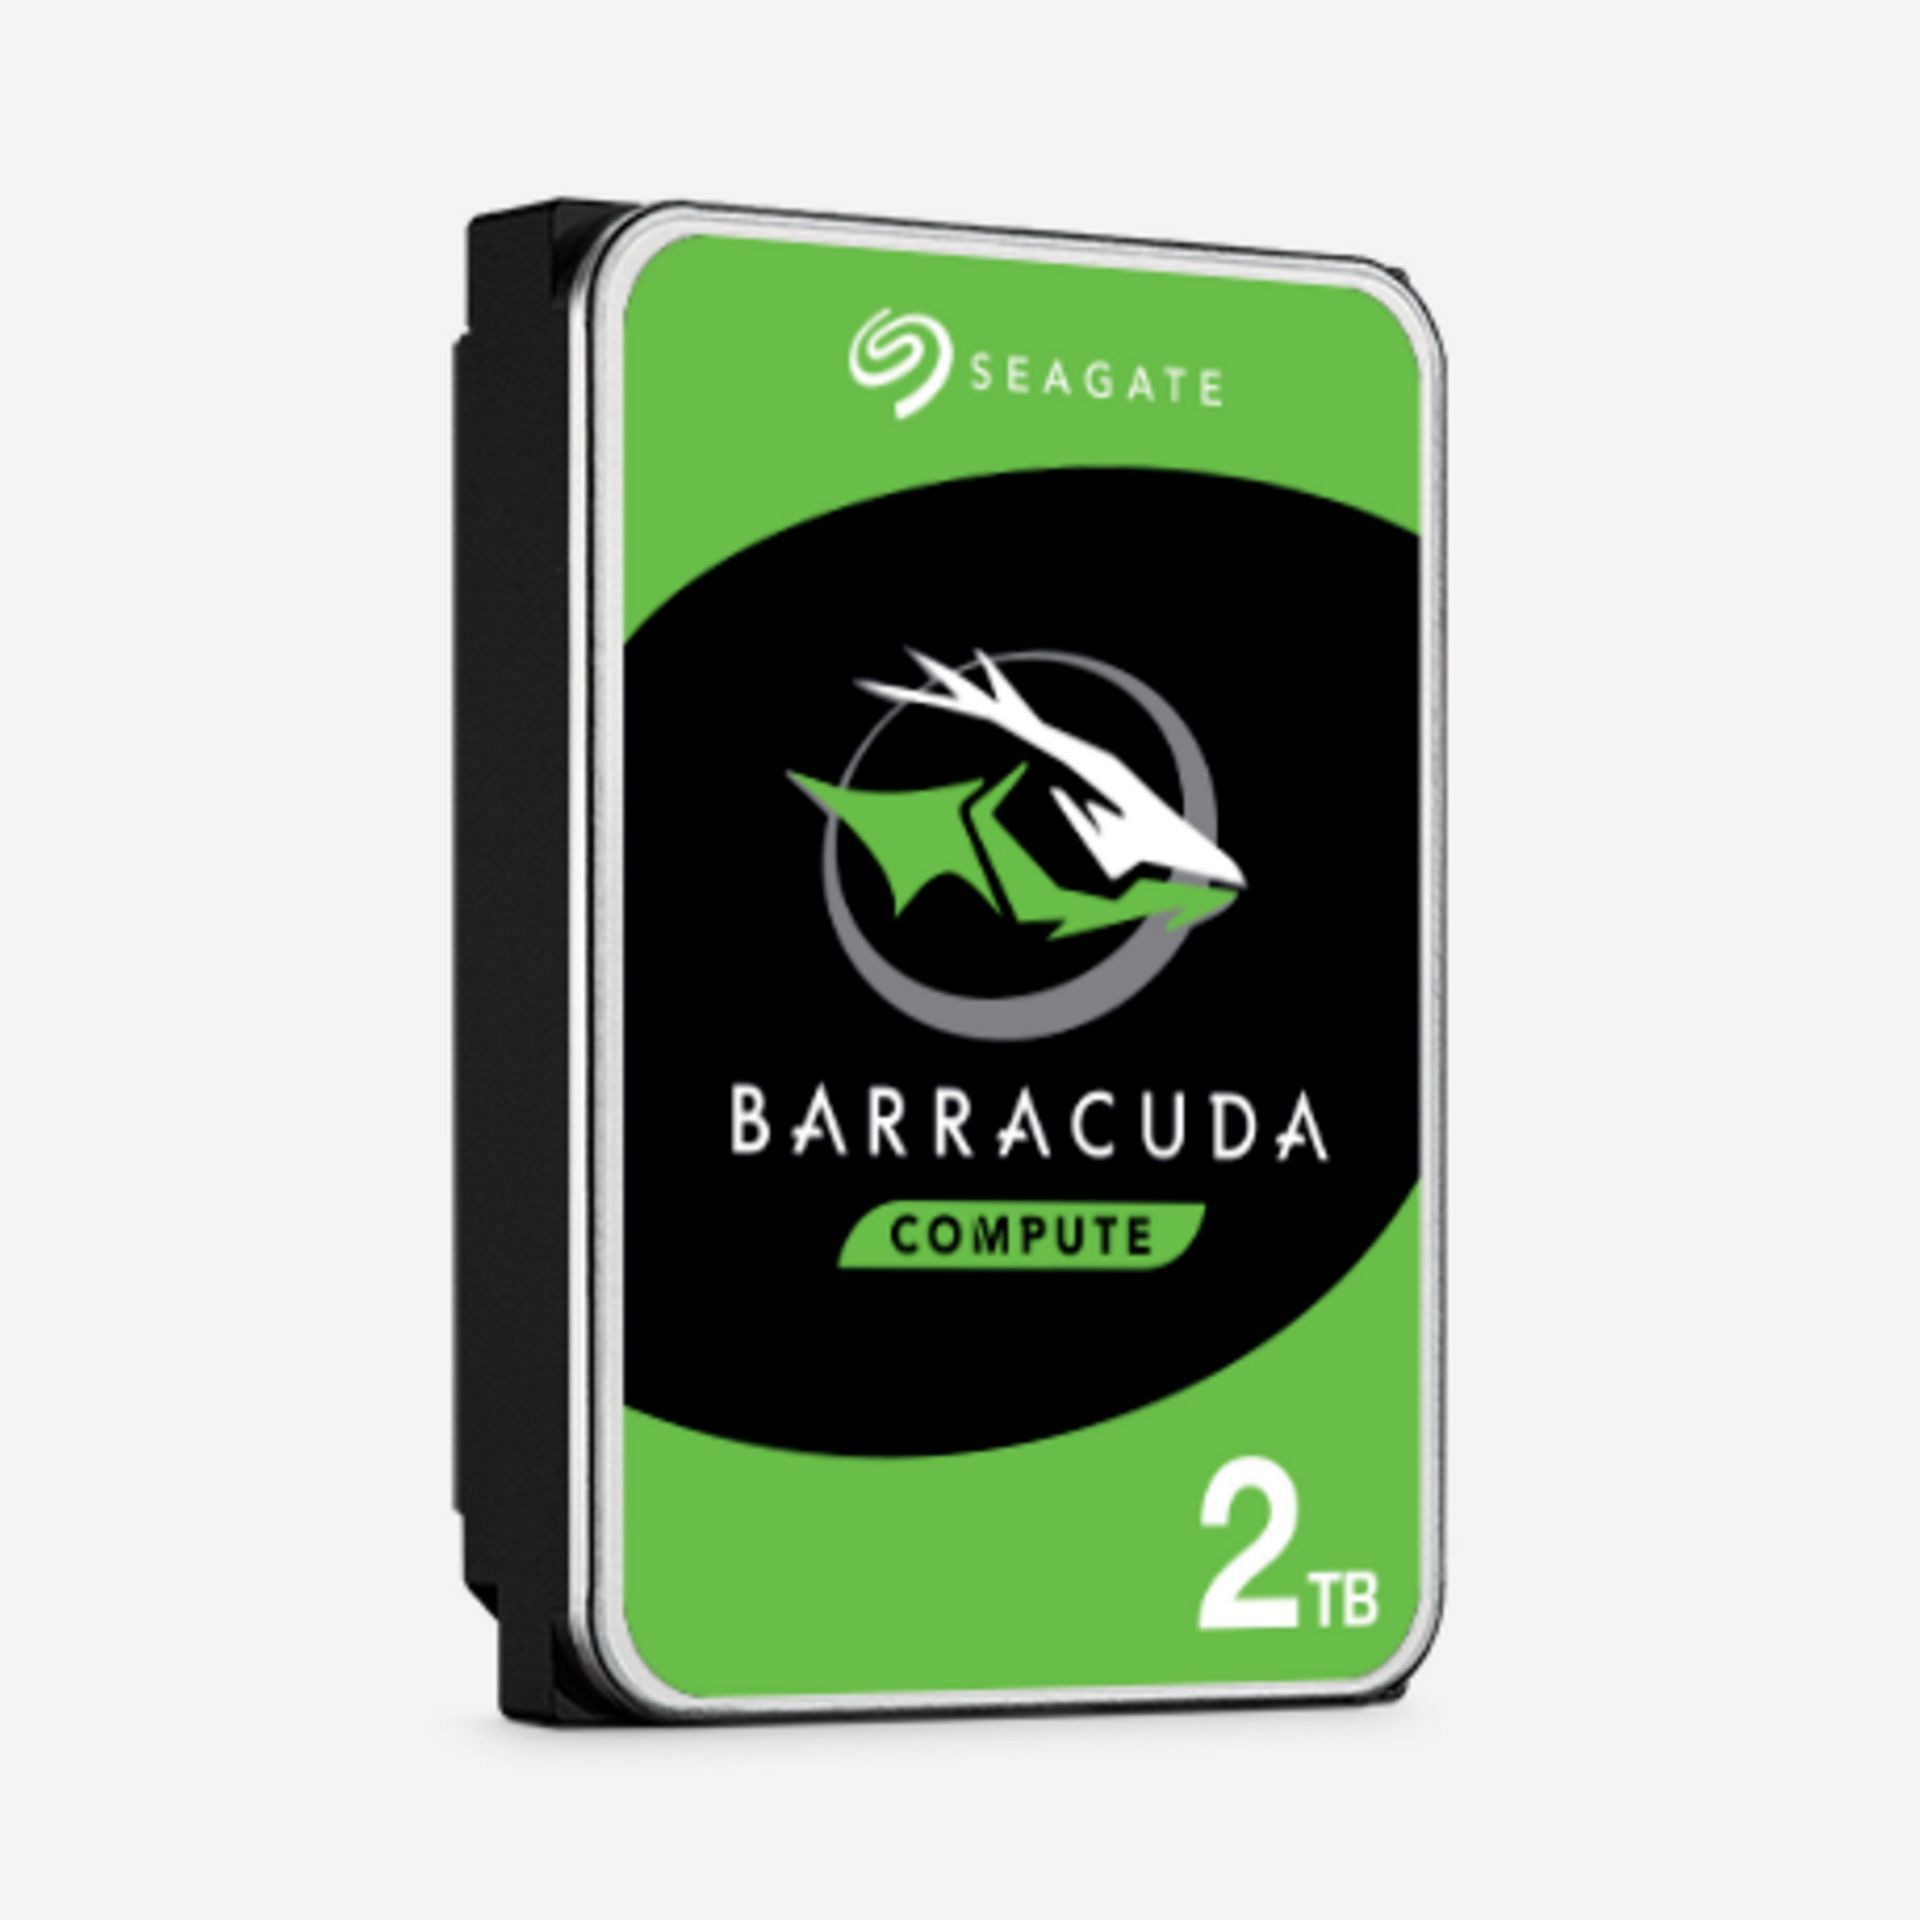 Seagate Barracuda (Image via Seagate)